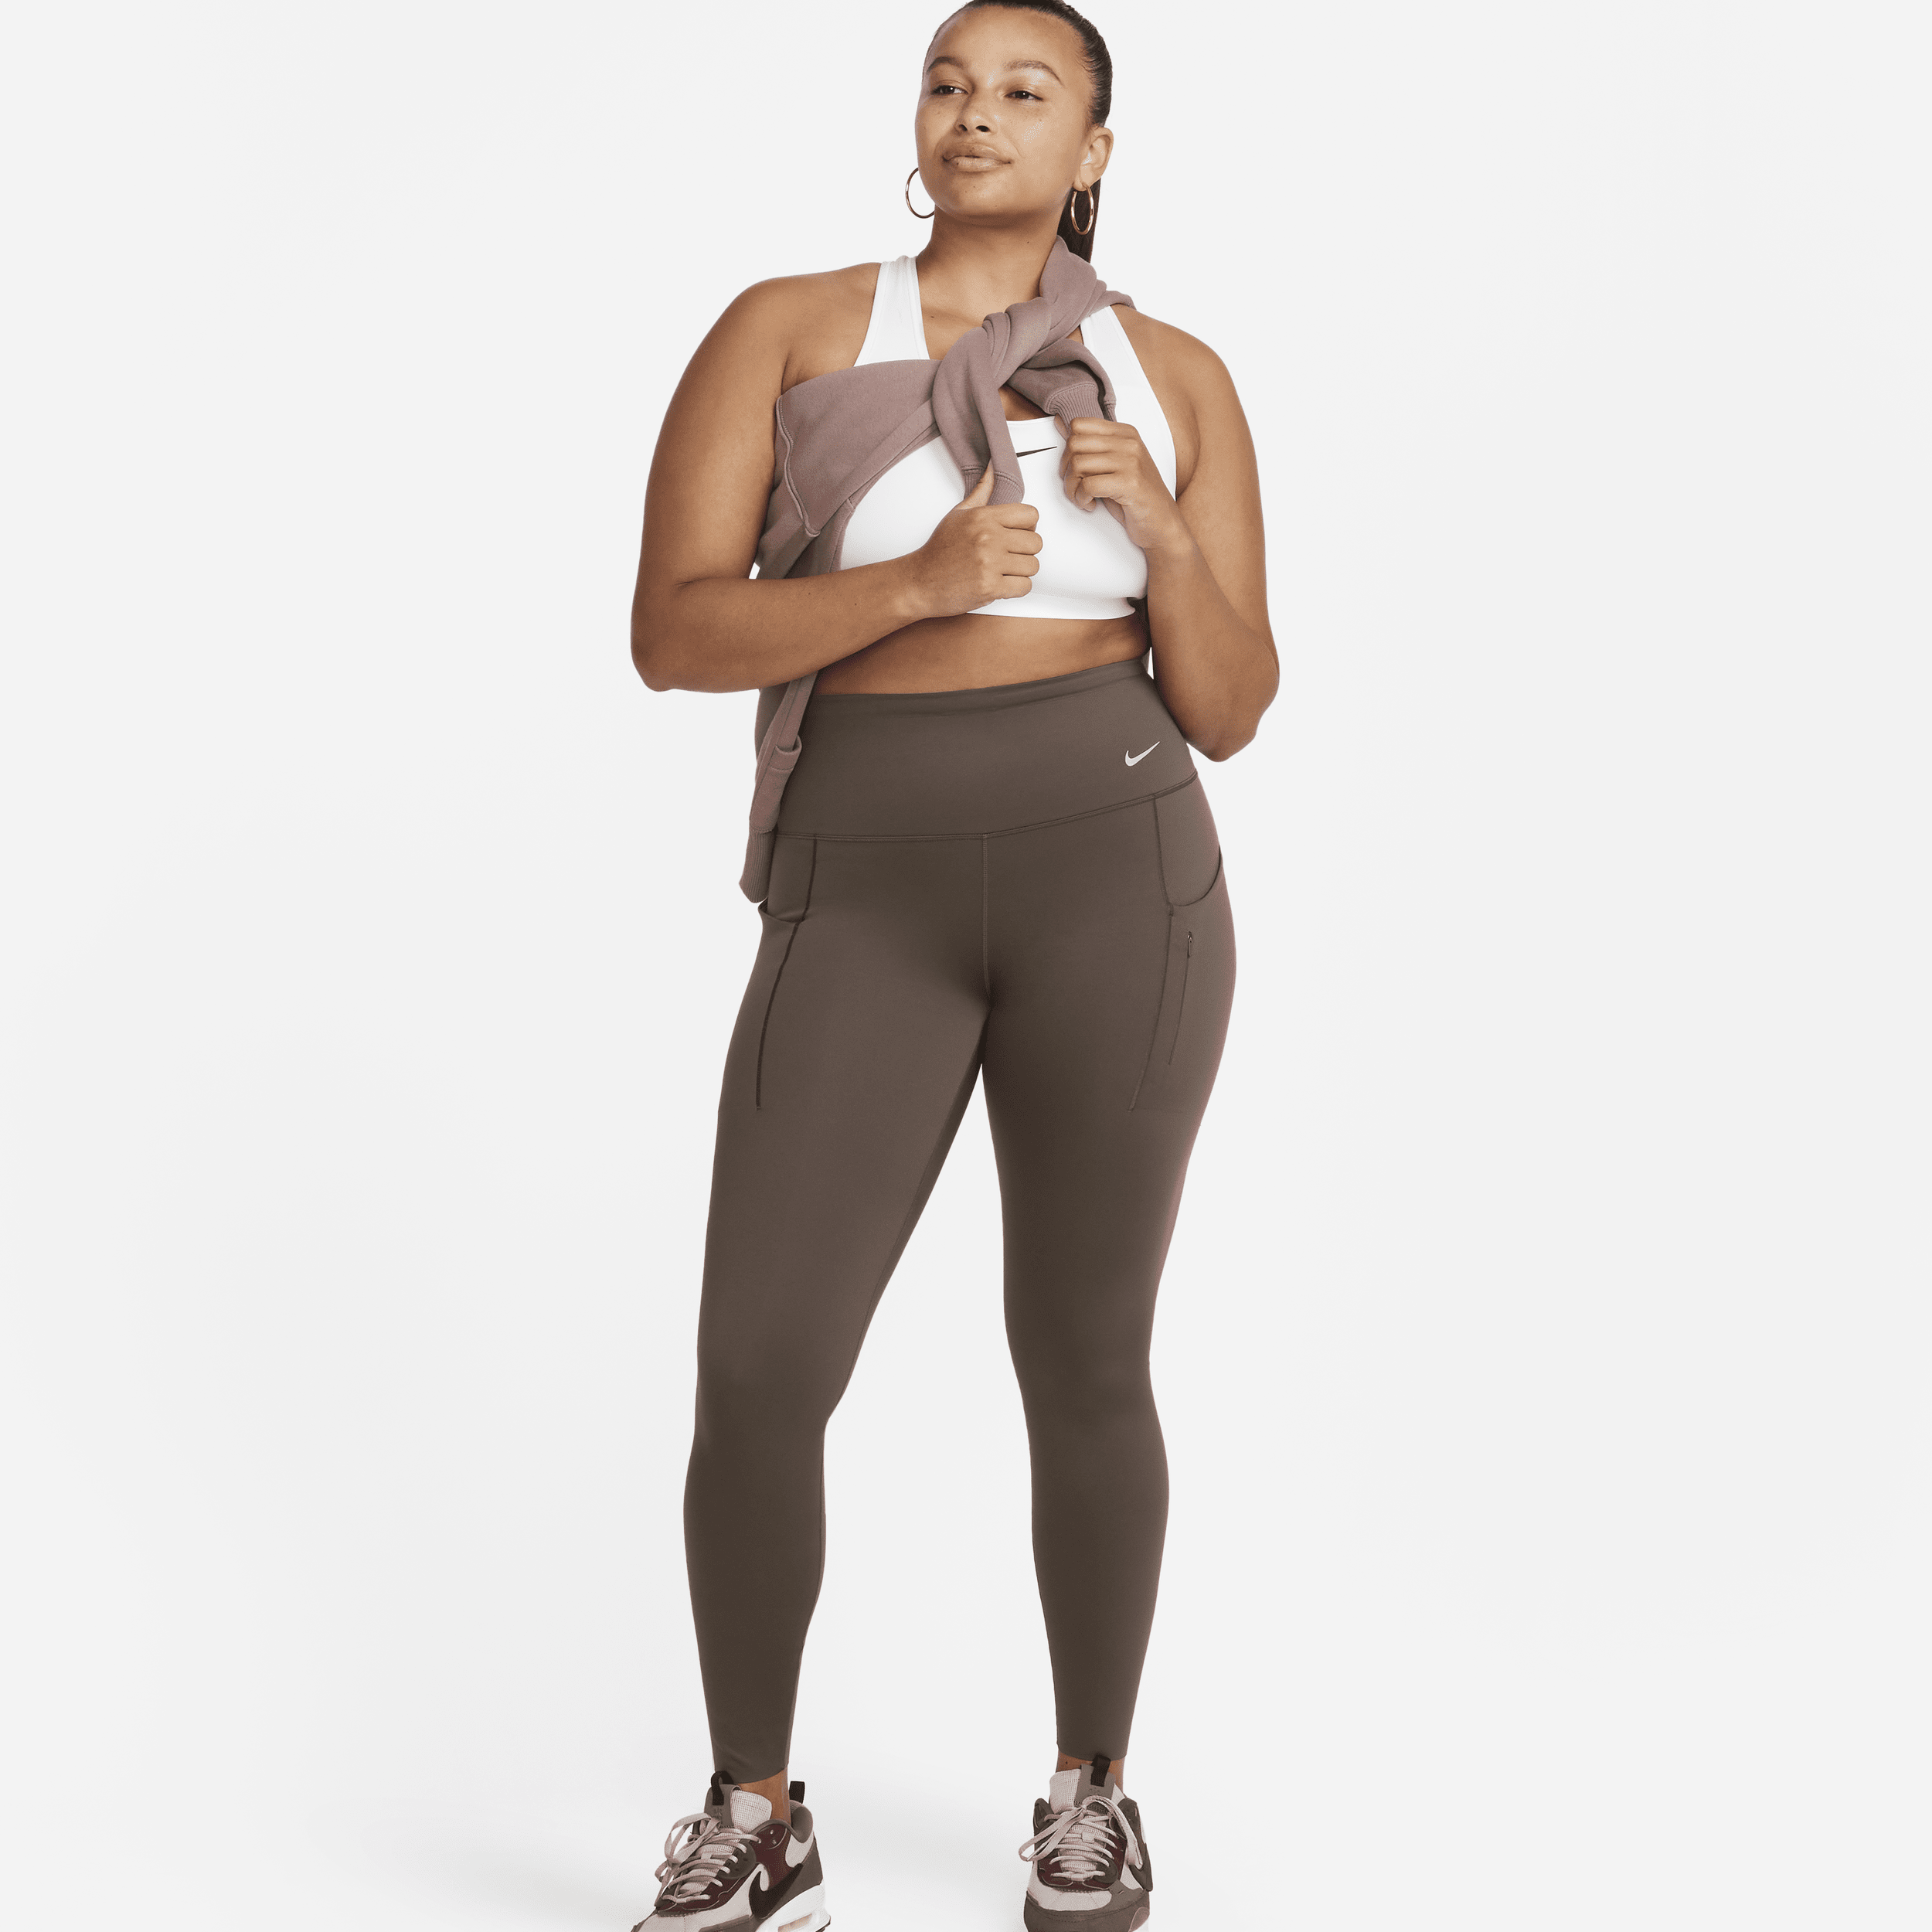 Leggings a tutta lunghezza a vita alta con tasche e sostegno elevato Nike Go – Donna - Marrone